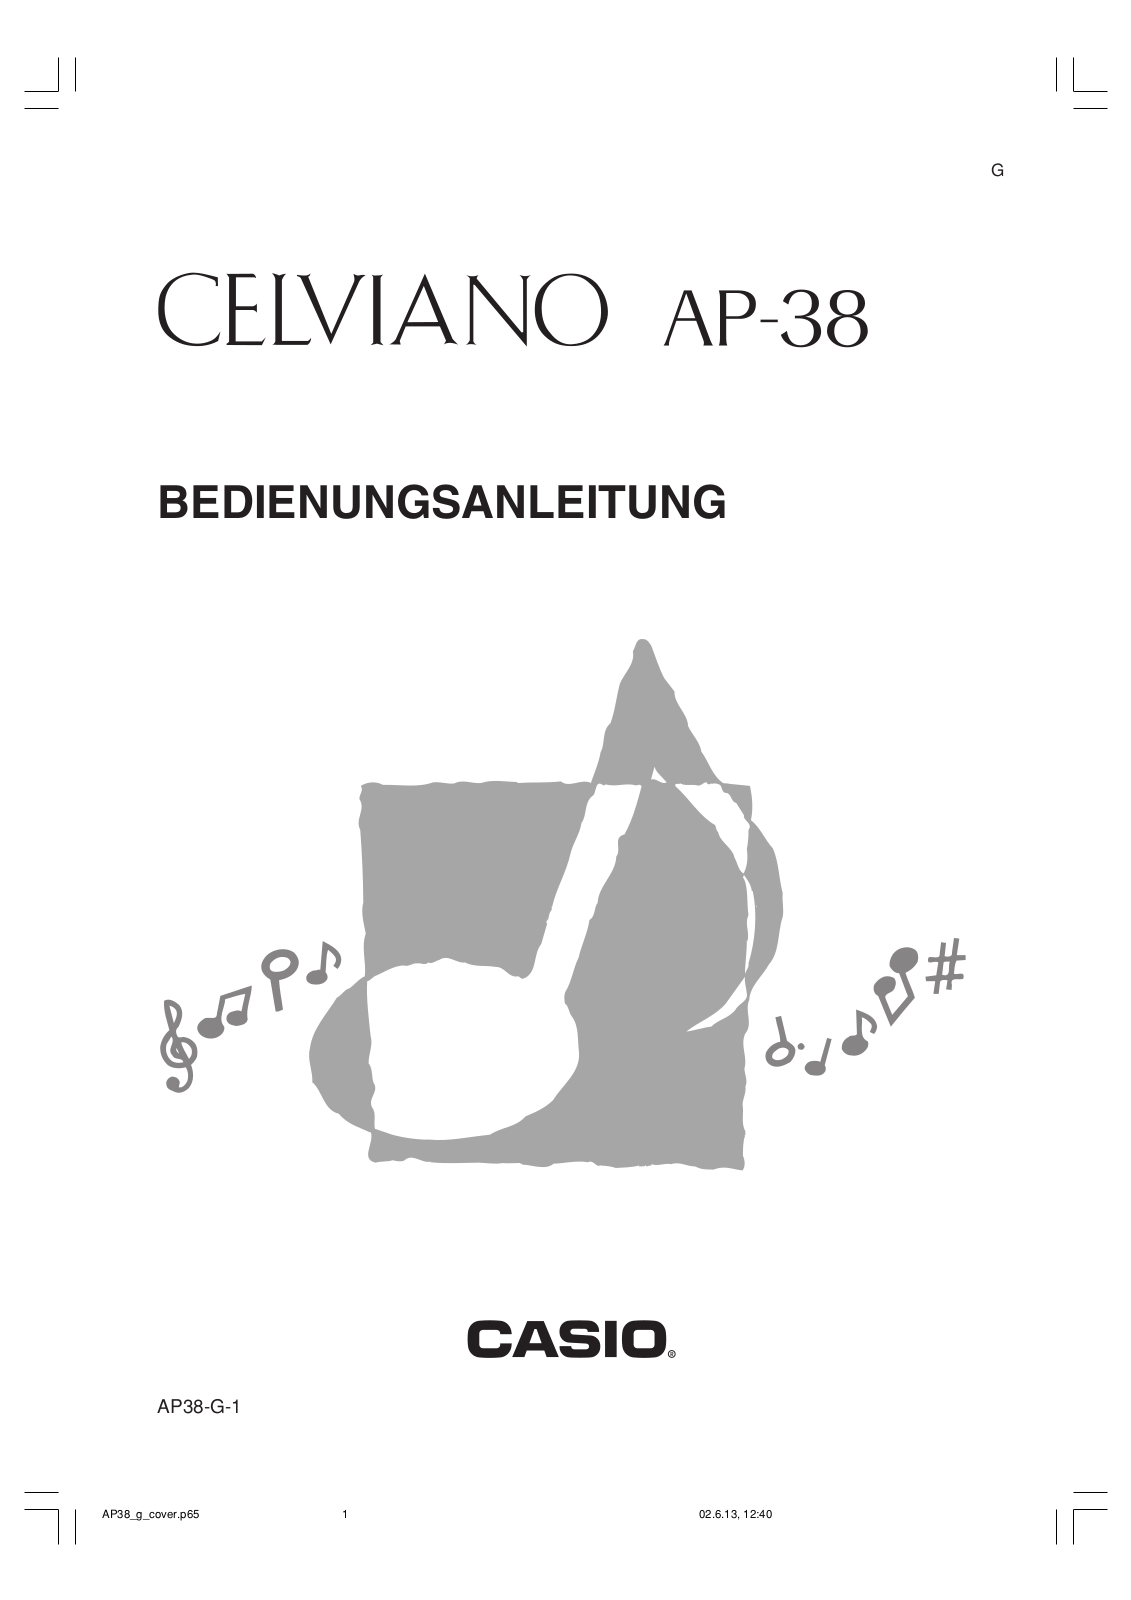 Casio CELVIANO AP-38 User Manual